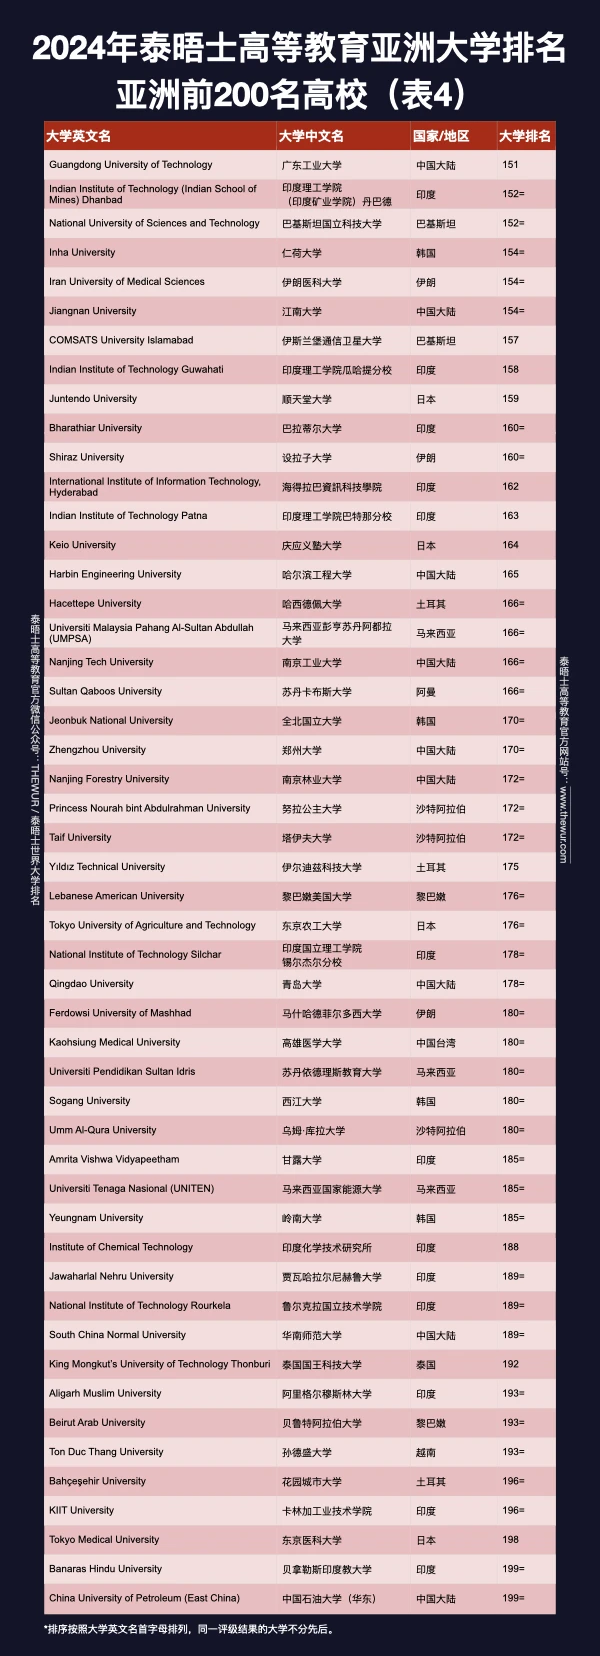 如何看待 2024 年泰晤士世界大学排名?